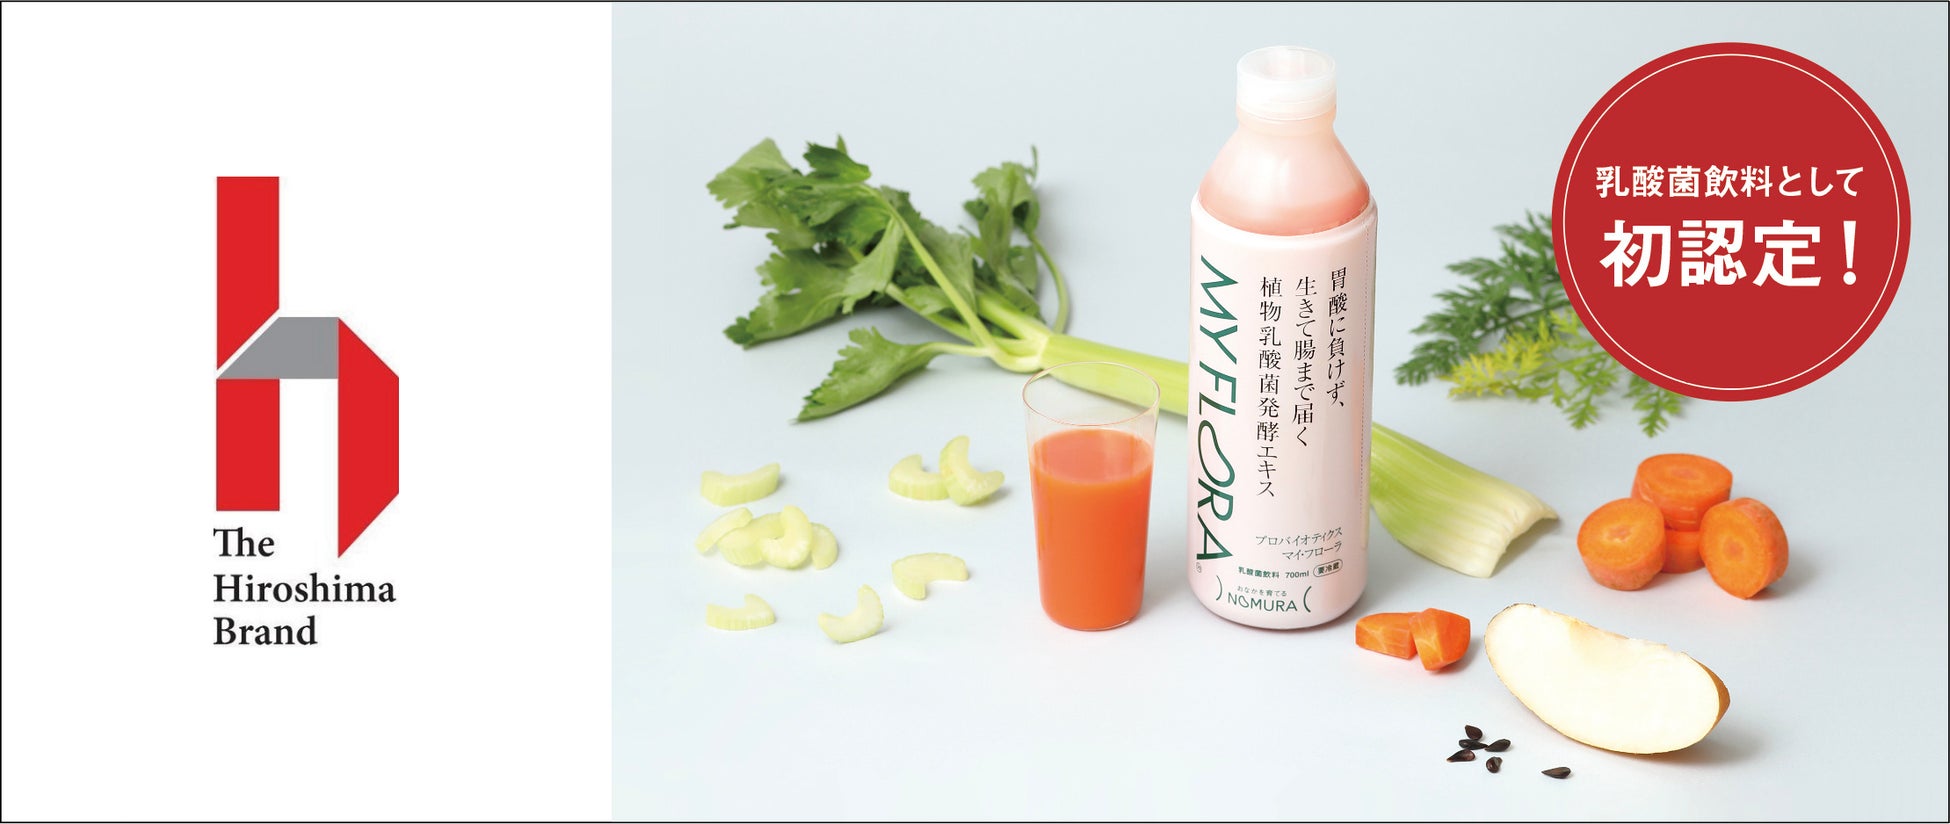 広島市が認定する広島の特産品「ザ・広島ブランド」に 乳酸菌飲料「マイ・フローラ」が認定決定!